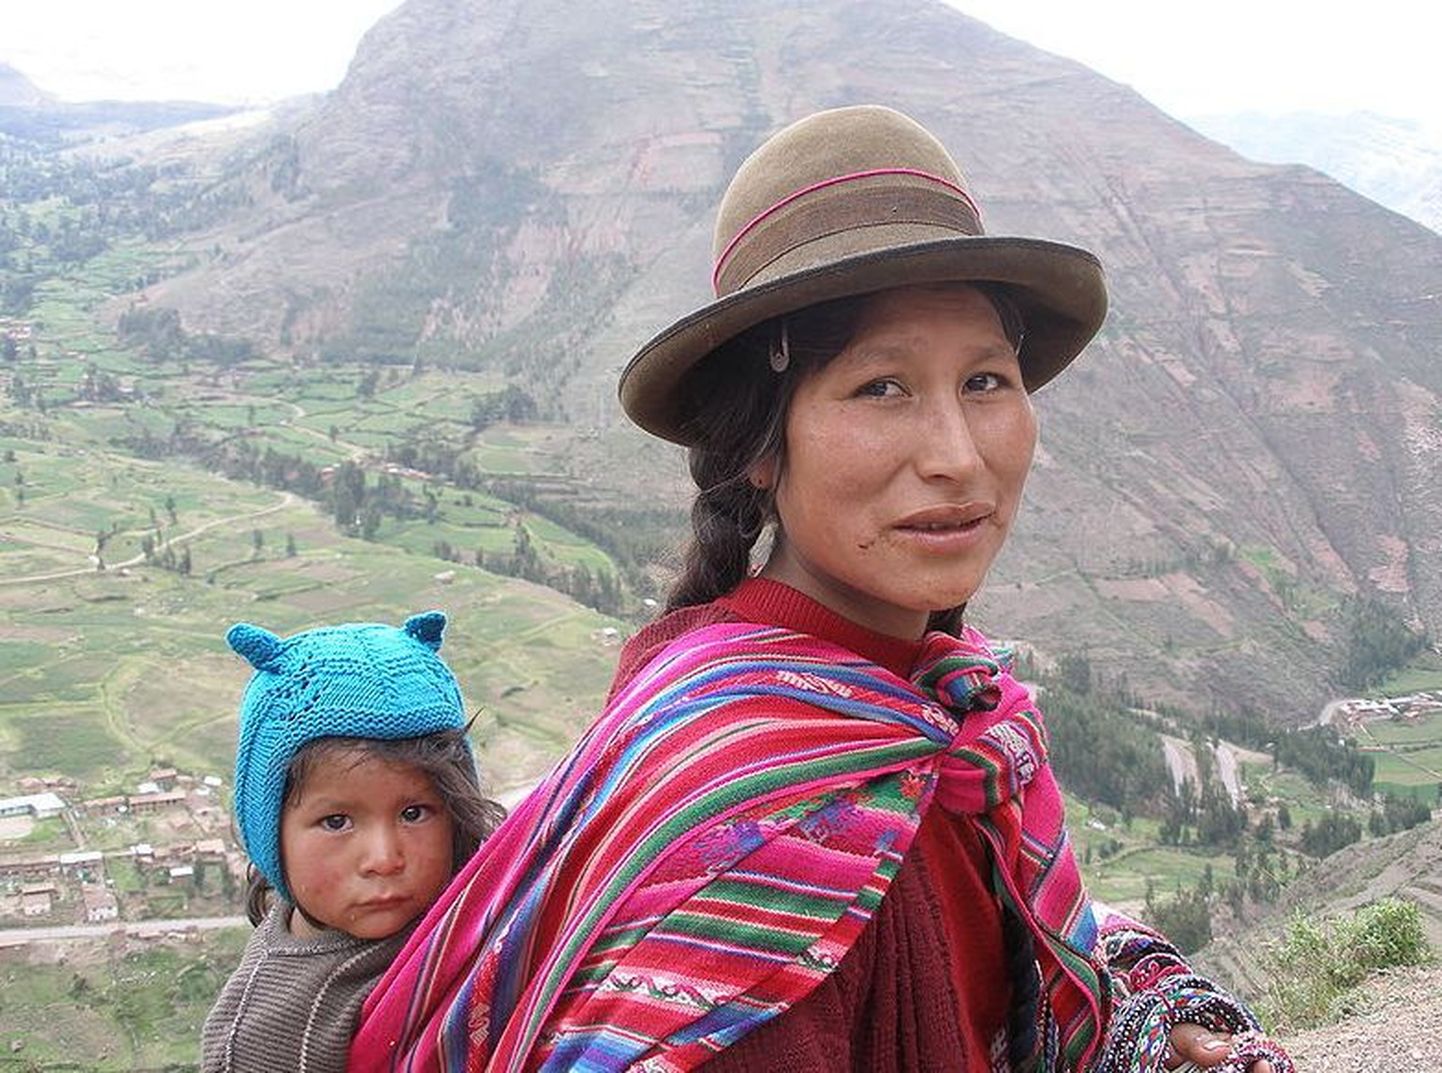 Peruu põliselanikud Andides elavad ketšuad